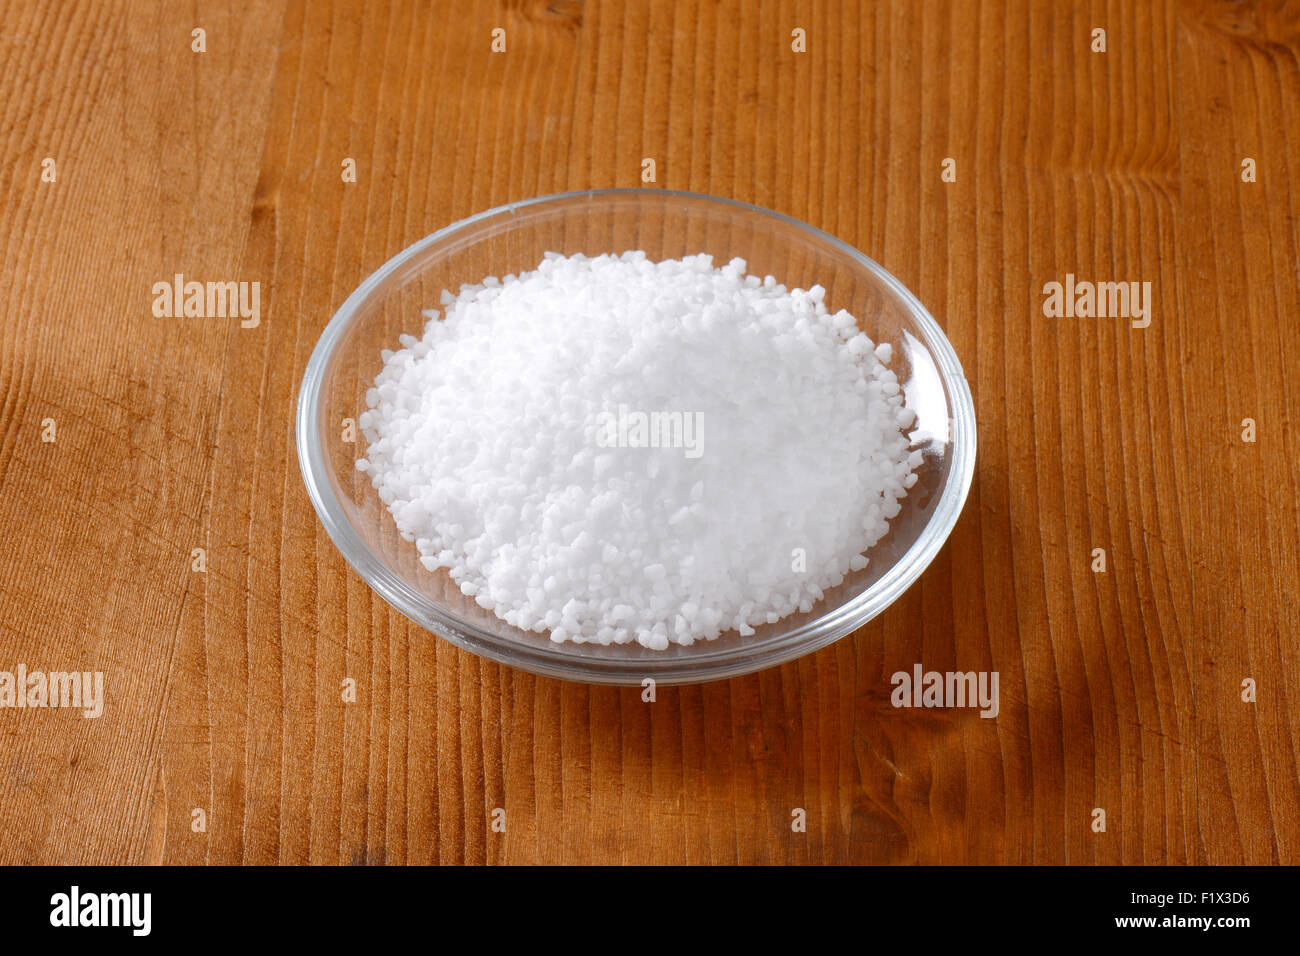 La sal comestible de grano grueso en la pequeña placa de vidrio Foto de stock